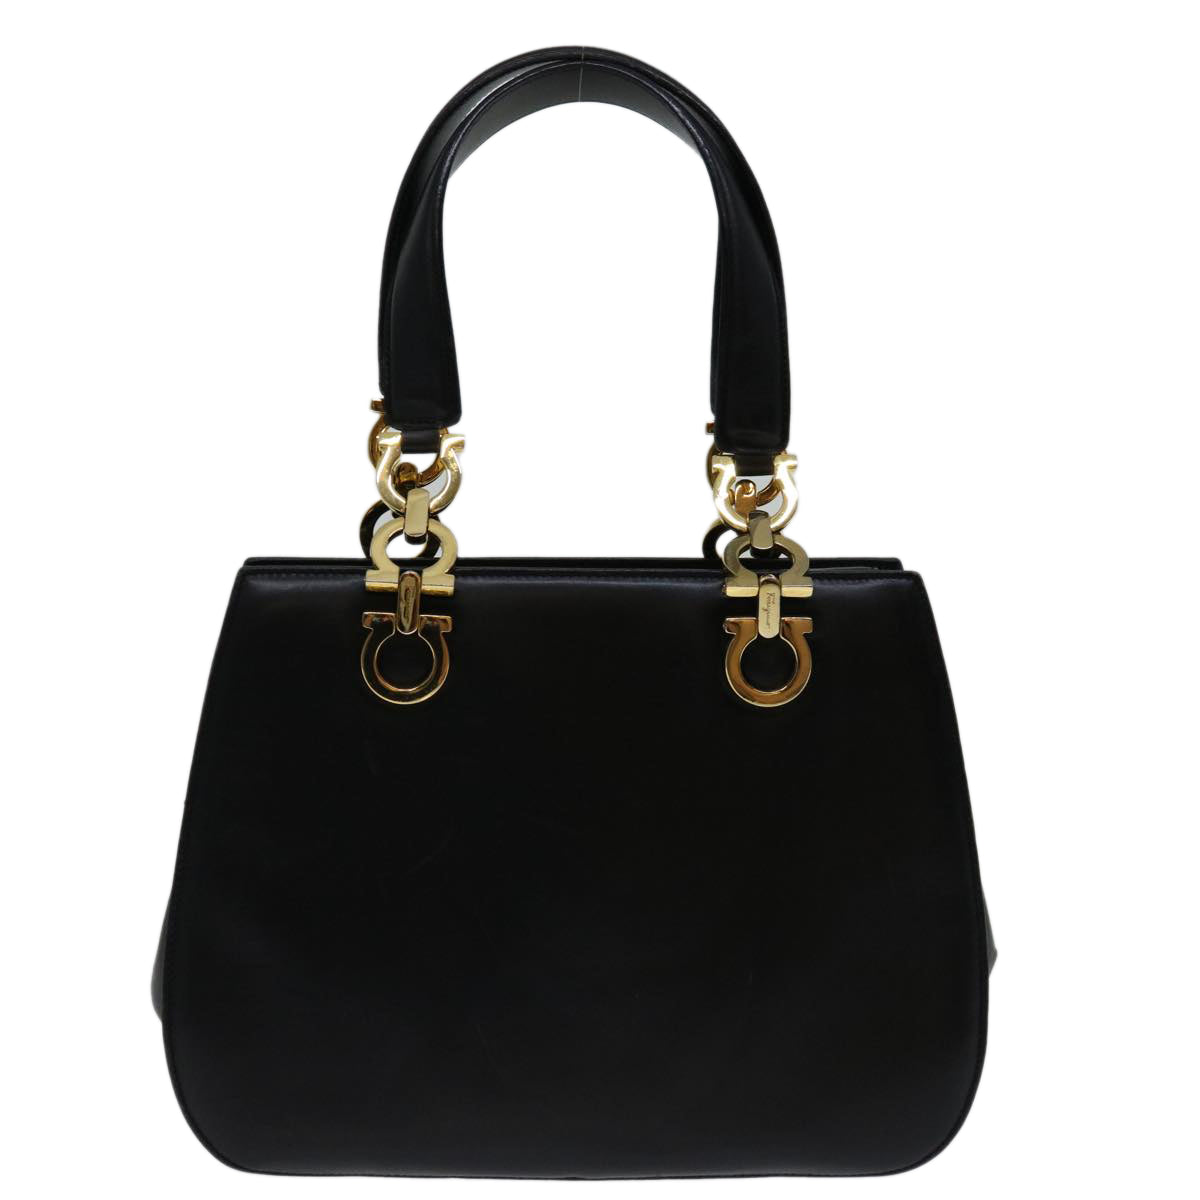 Salvatore Ferragamo Hand Bag Leather Black Auth 69894 - 0